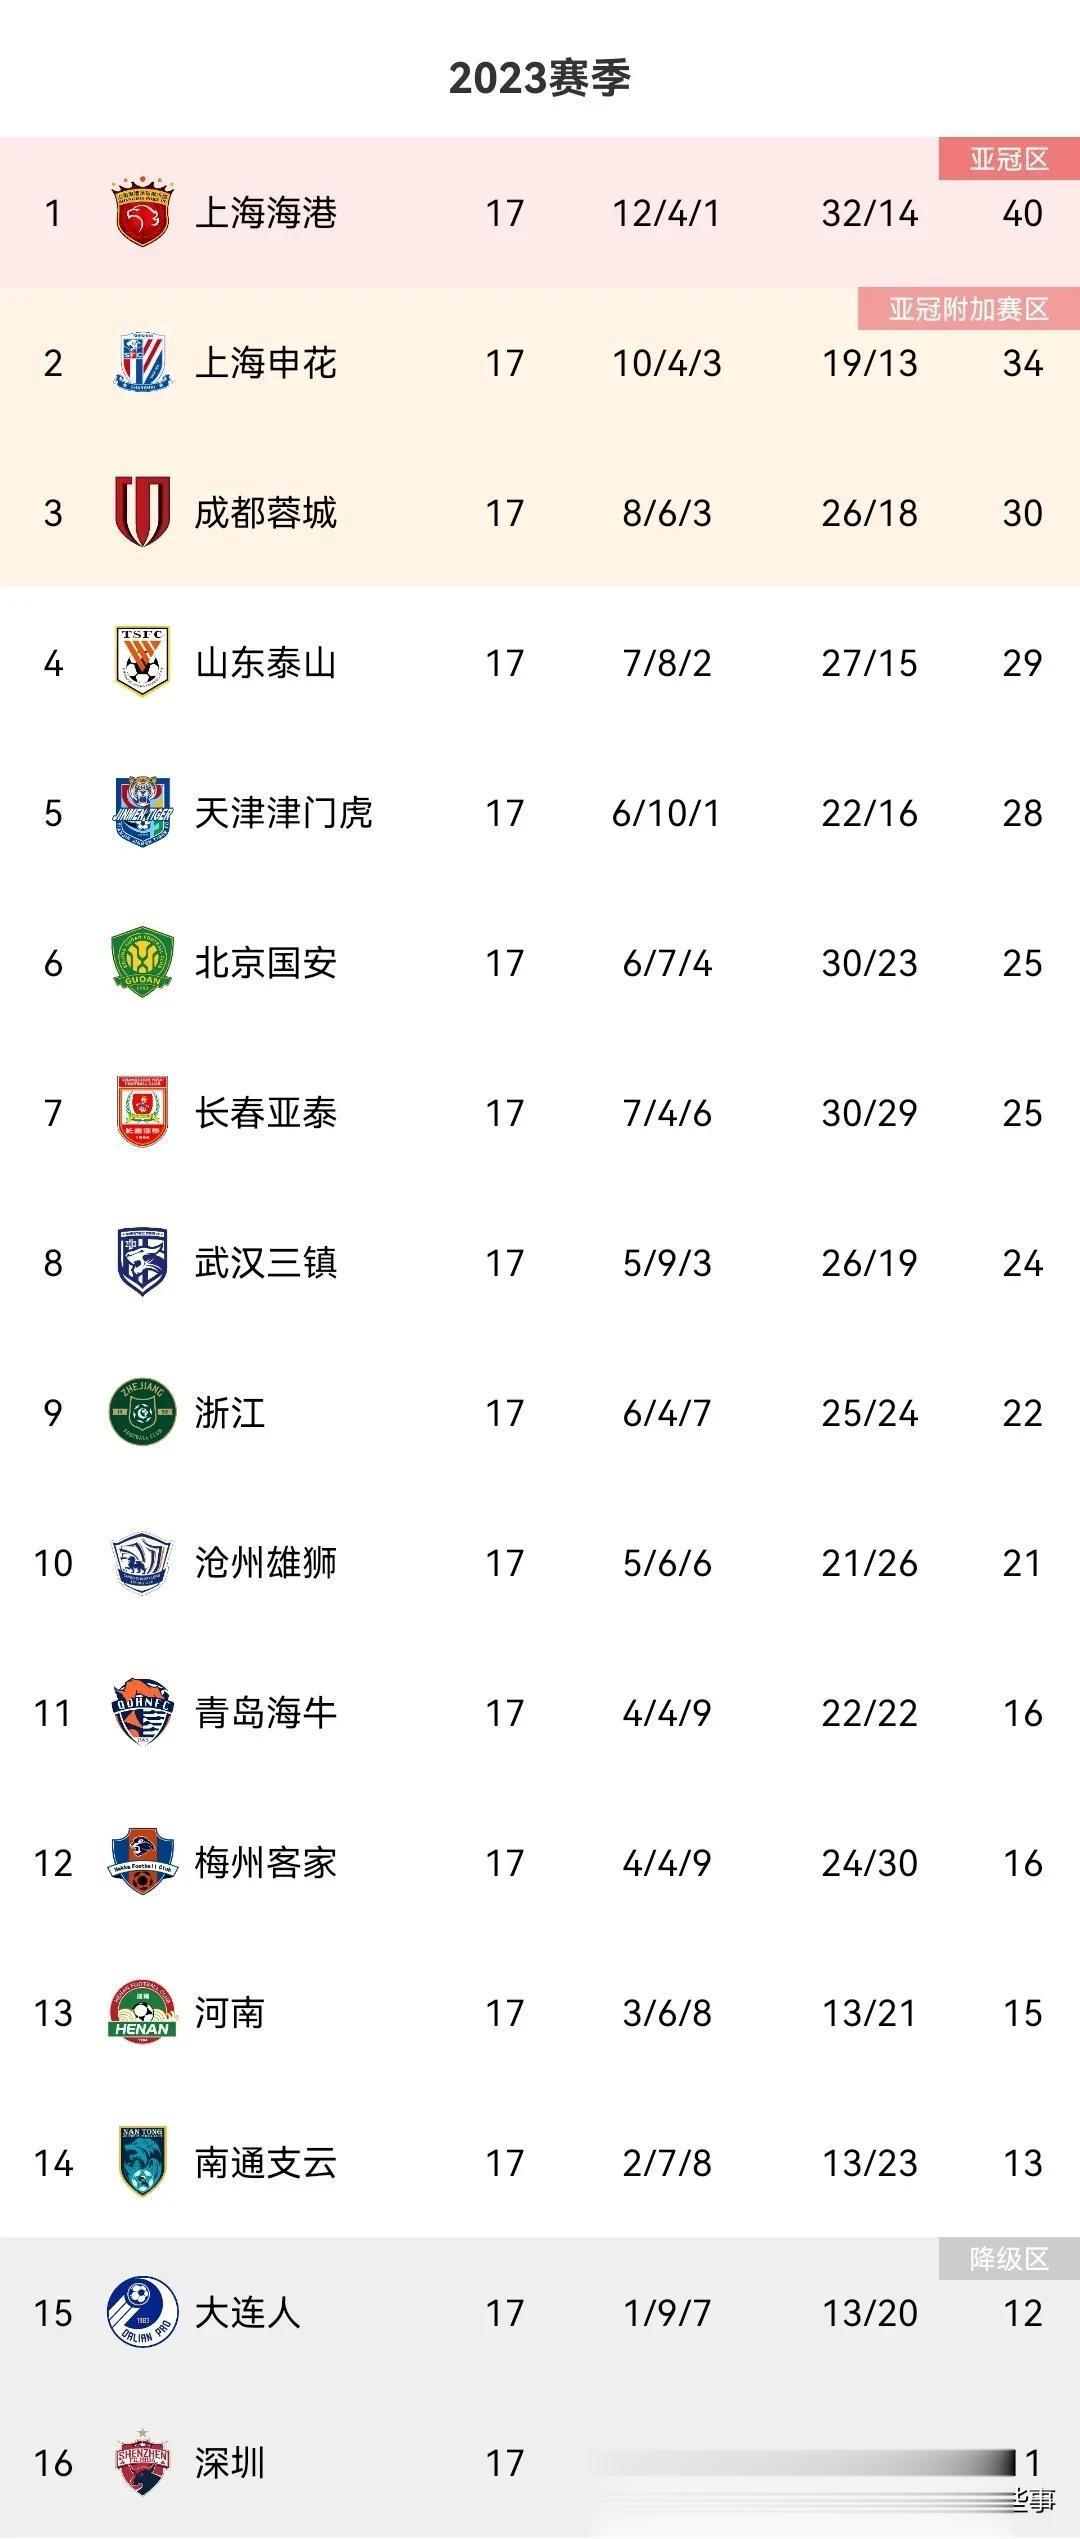 中超积分榜最新变化
上海申花2：1力克梅州客家稳居第2
本场争议不断，该判的点球(1)